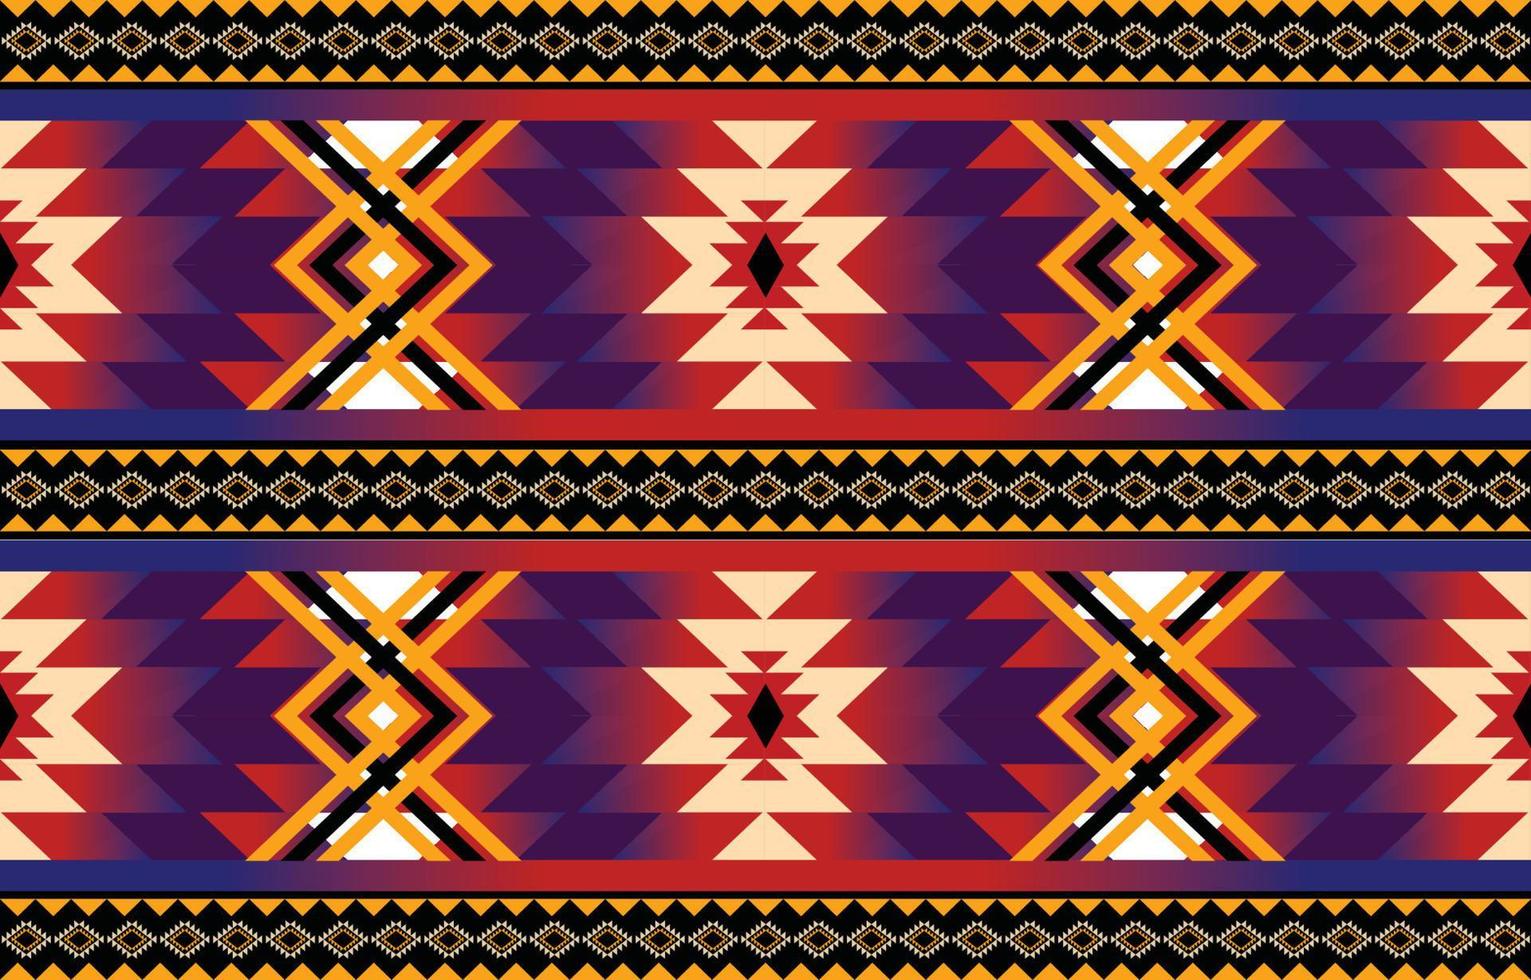 vetor padrão geométrico étnico. nativo afro-americano mexicano indonésio motivo asteca e elementos de padrão boêmio. projetado para plano de fundo, papel de parede, impressão, embrulho, azulejo, motivo asteca batik.vector